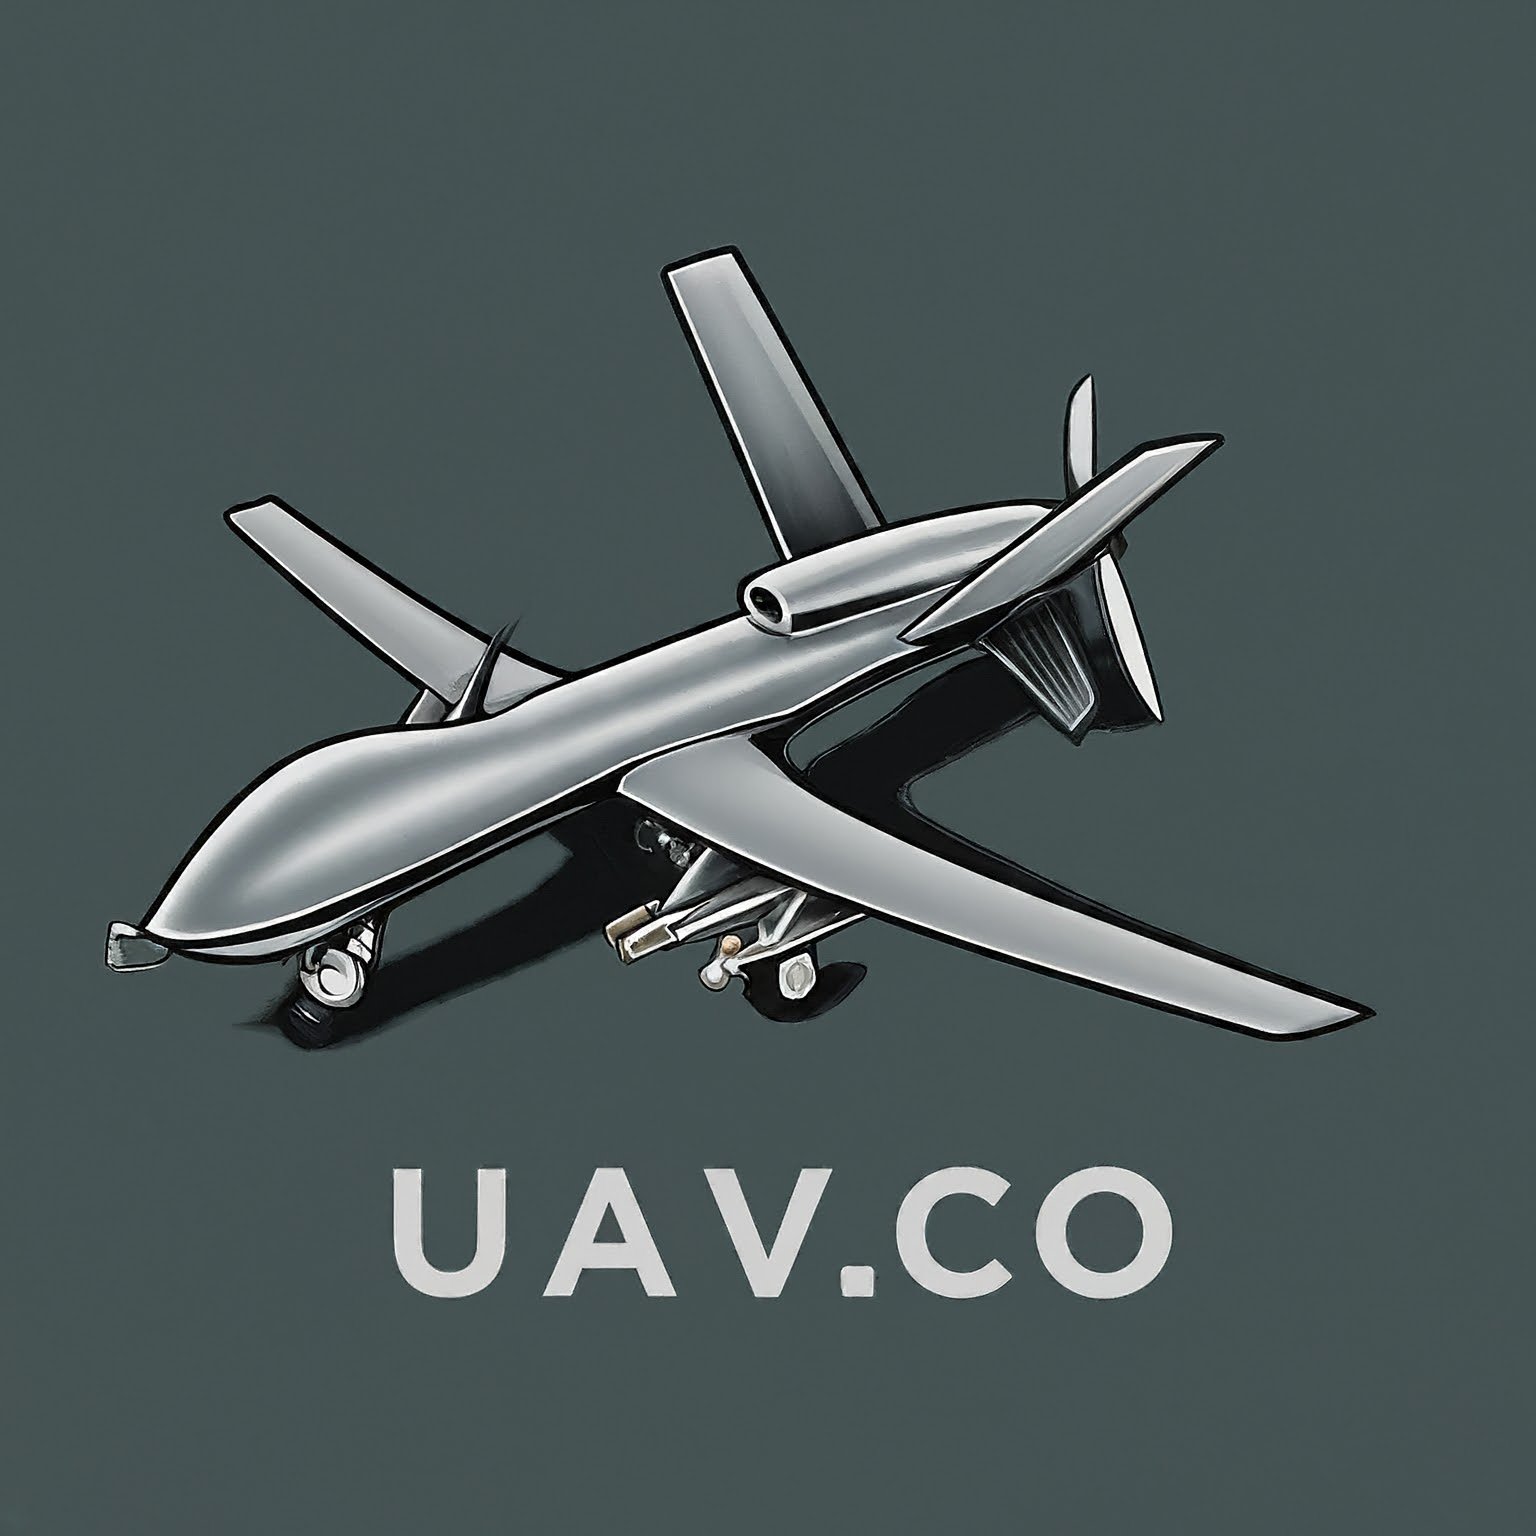 UAV News